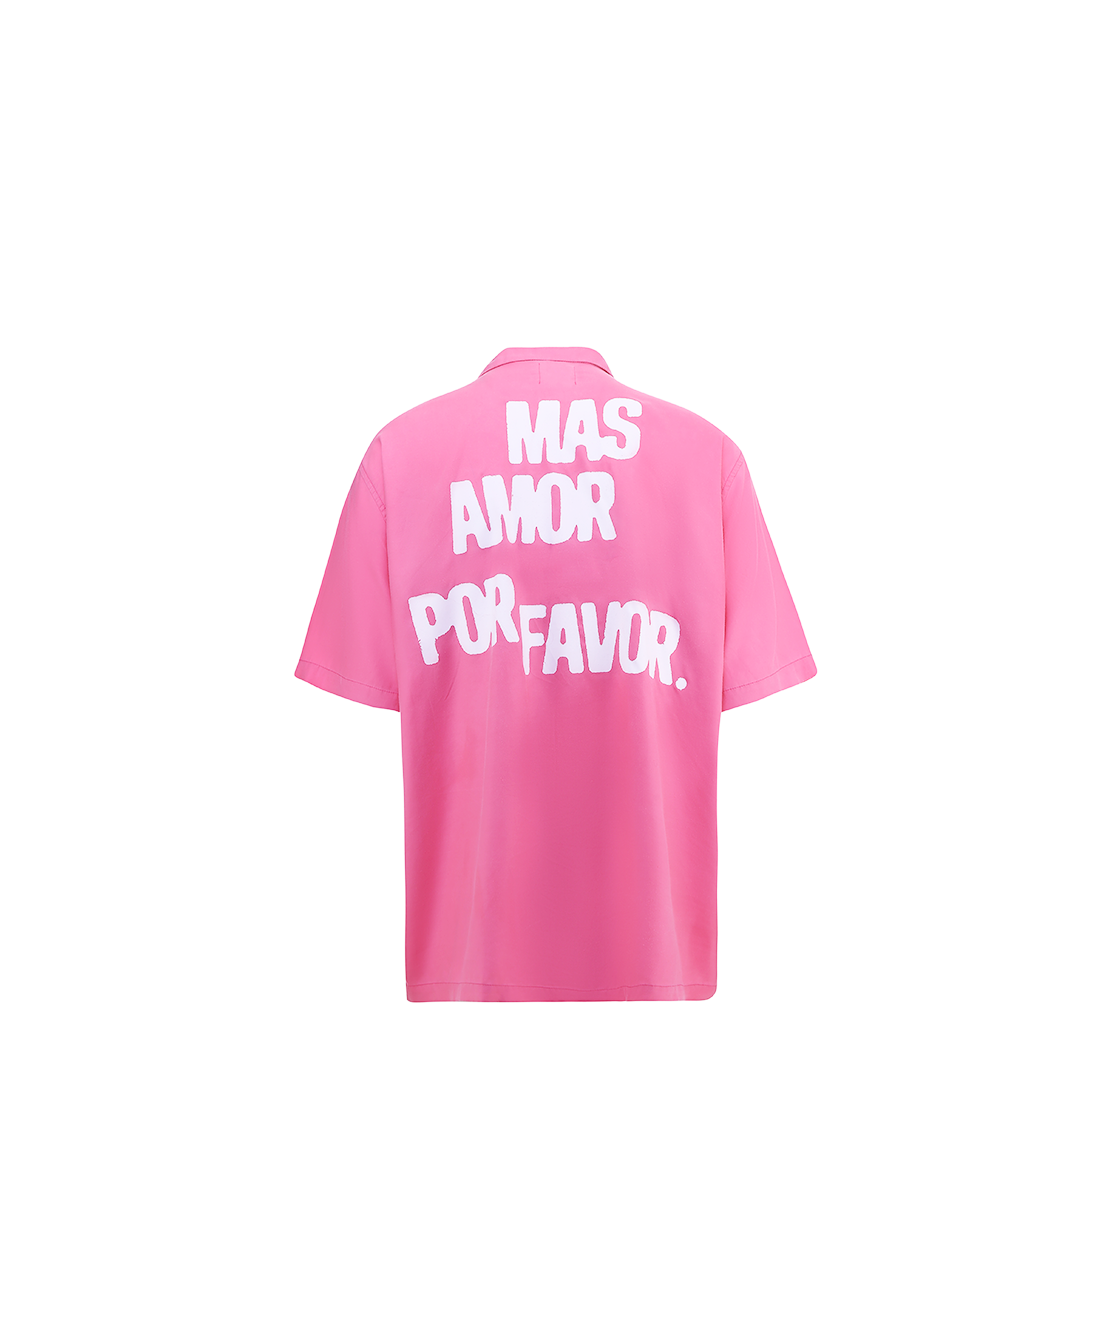 Mas amor por favor shirt - pink